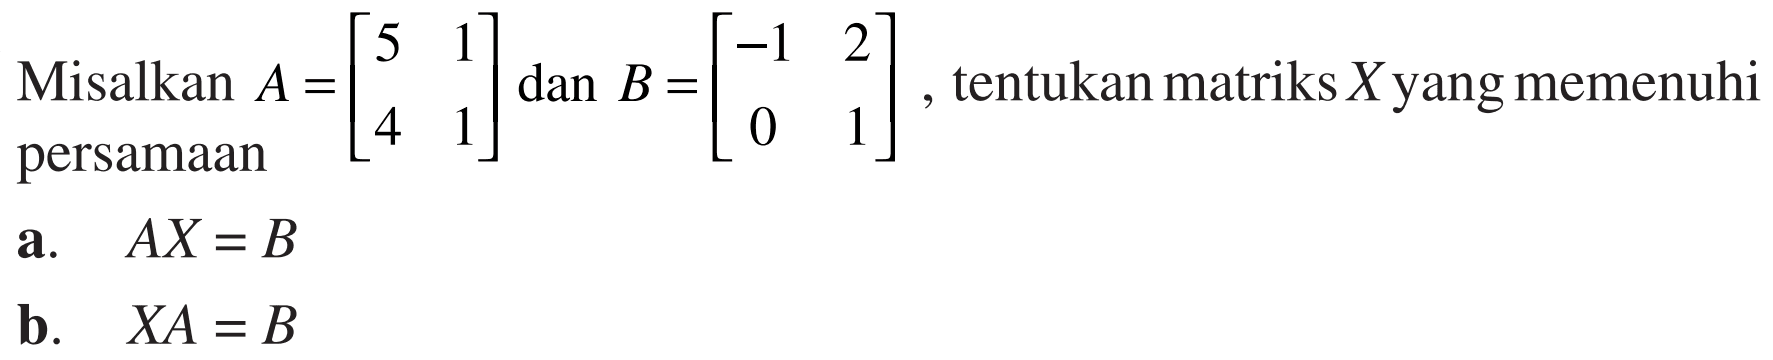 Misalkan A=[5 1 4 1] dan B=[-1 2 0 1], tentukan matriks X yang memenuhi persamaan a. AX=B b. XA=B